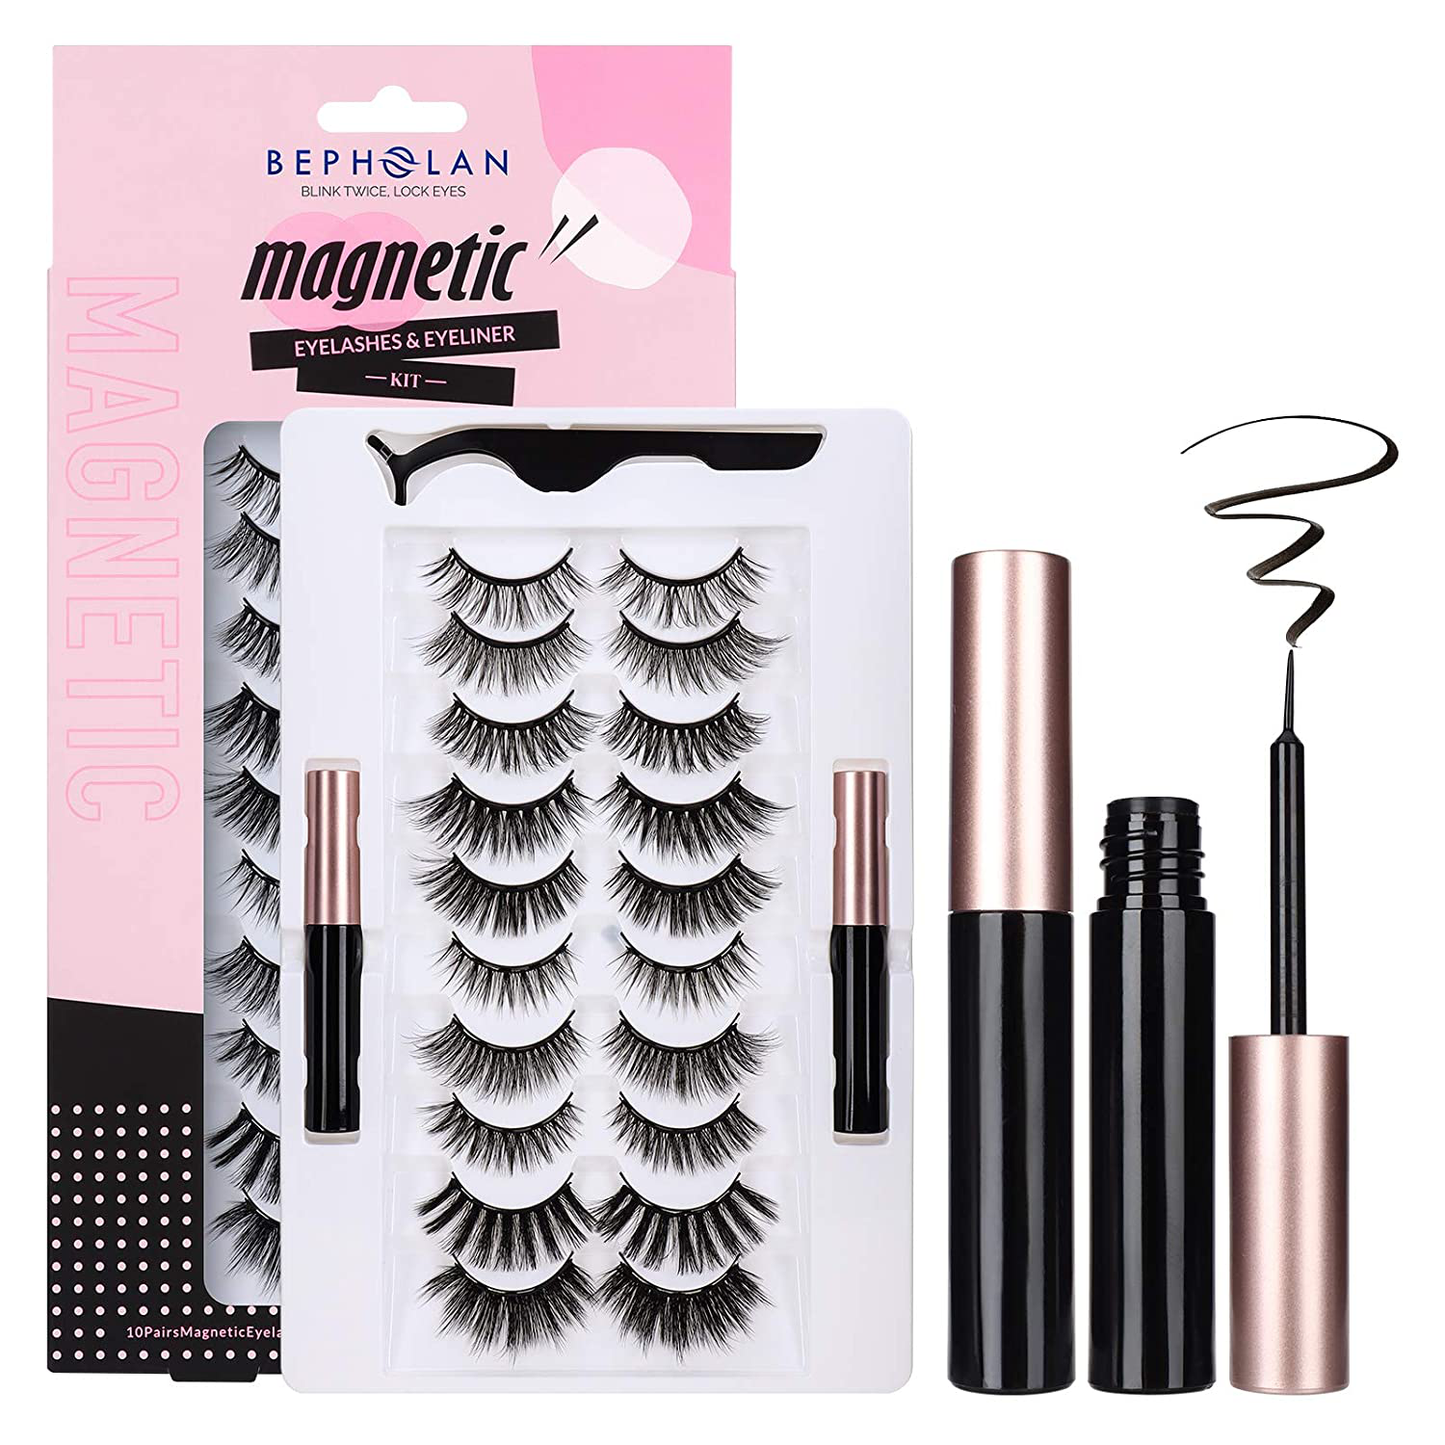 BEPHOLAN Magnetic Eyelashes with Eyeliner Kit, 5 Styles and Comes with 2 Tubes of Magnetic Eyeliner, Safe Ingredients&Comfortable, No Glue&Easy to Use, Magnetic Eyelashes Set Five